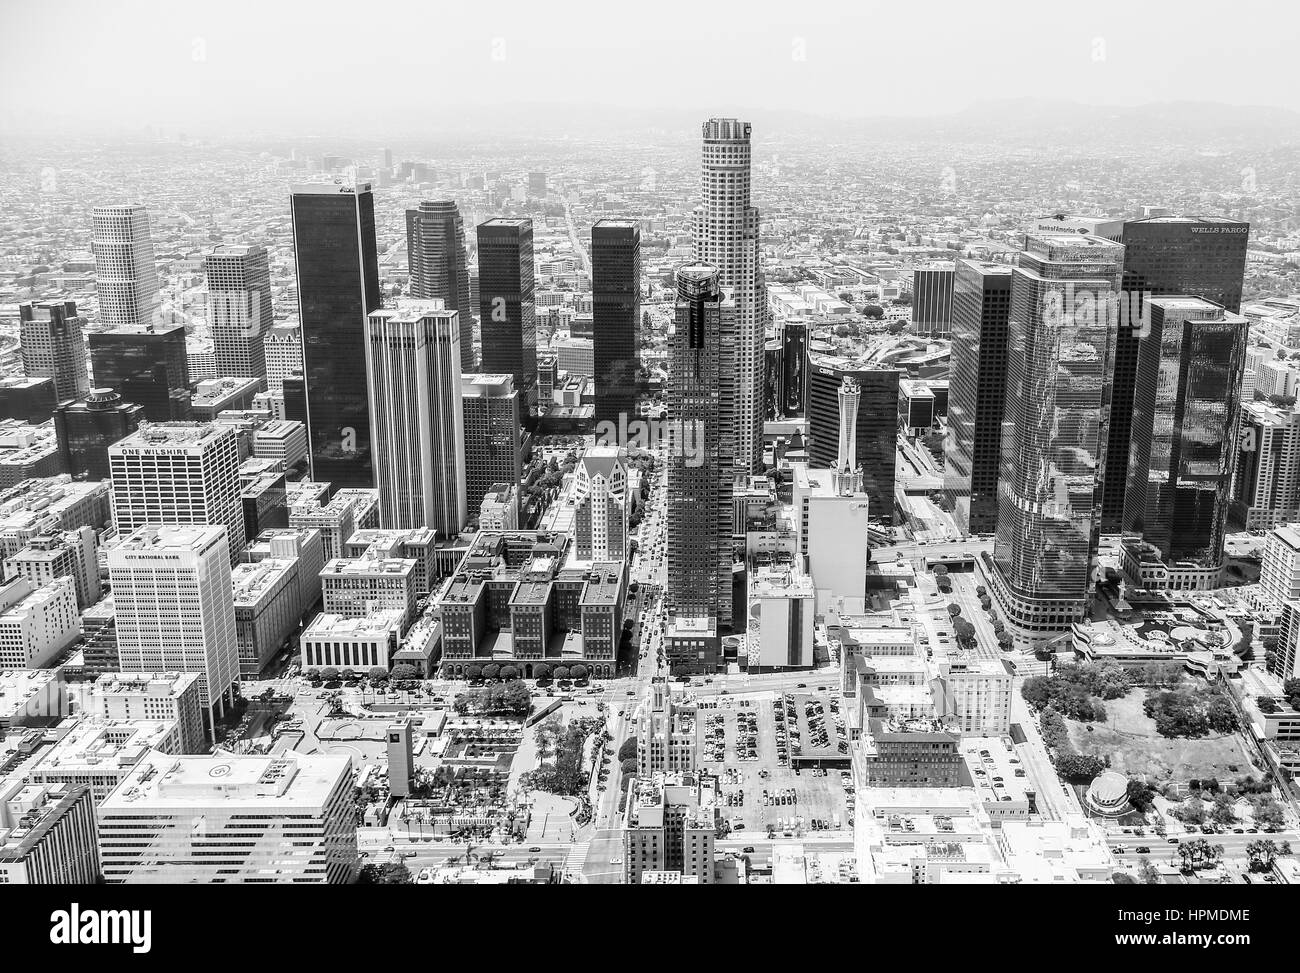 Los Angeles, États-Unis - 27 mai 2015 : Vue aérienne de l'horizon du centre-ville de Los Angeles en noir et blanc. Banque D'Images